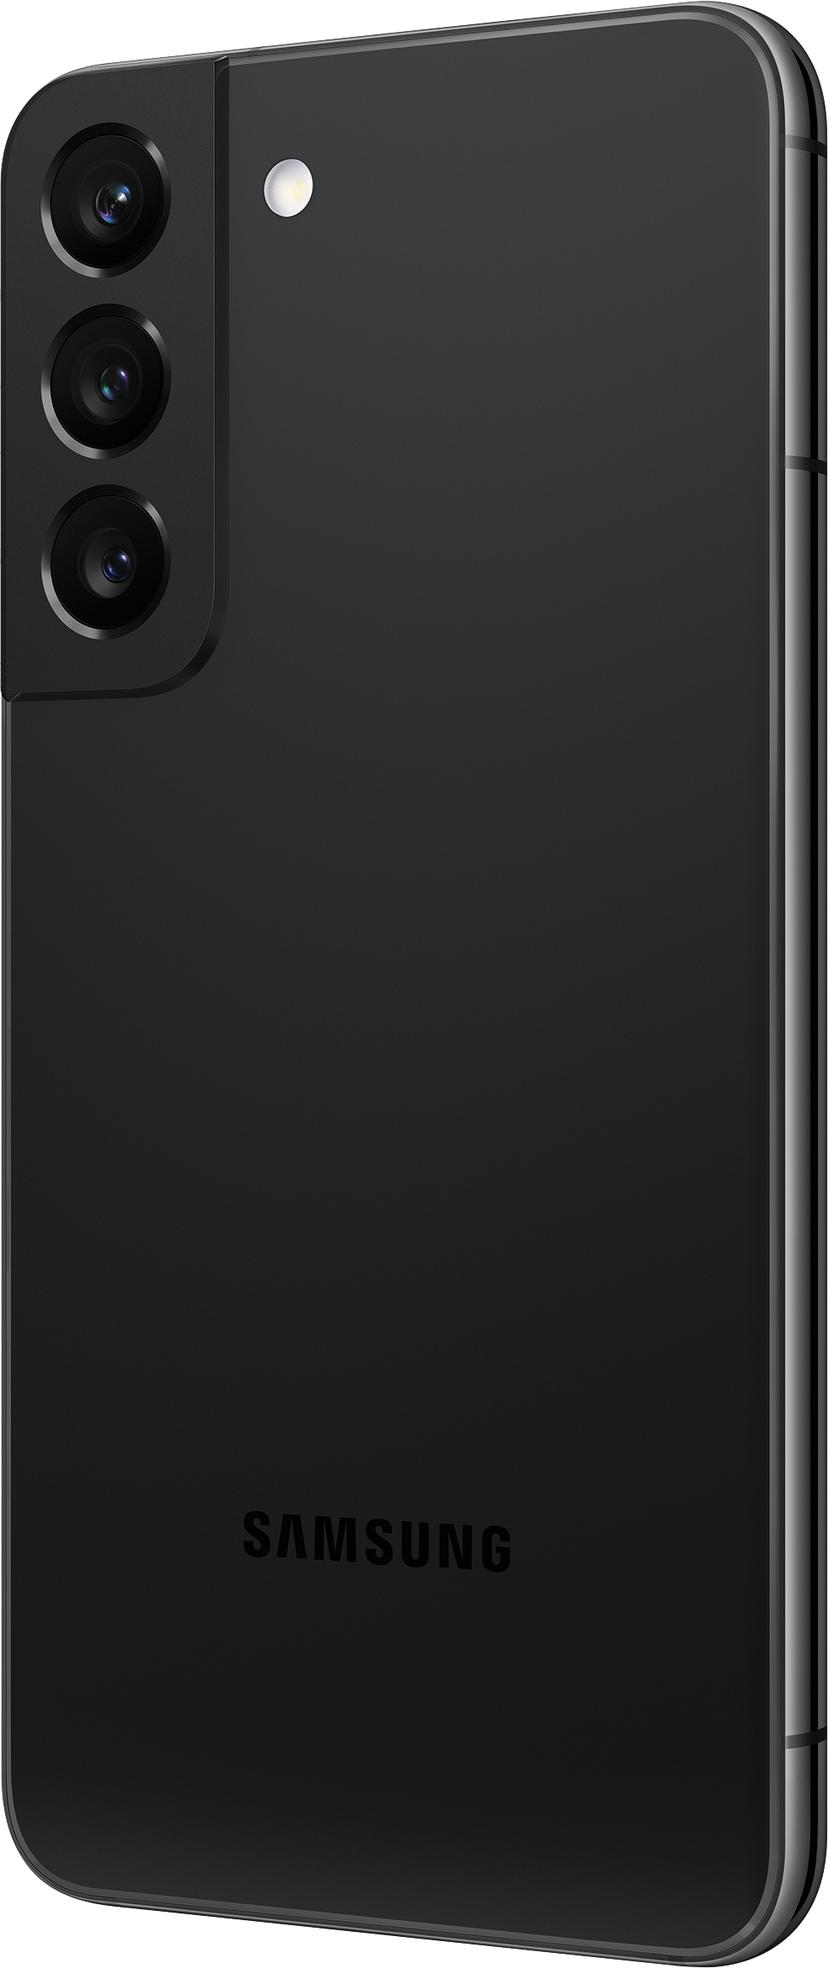 Samsung Galaxy S22 Enterprise Edition 128GB Dual-SIM Fantom sort